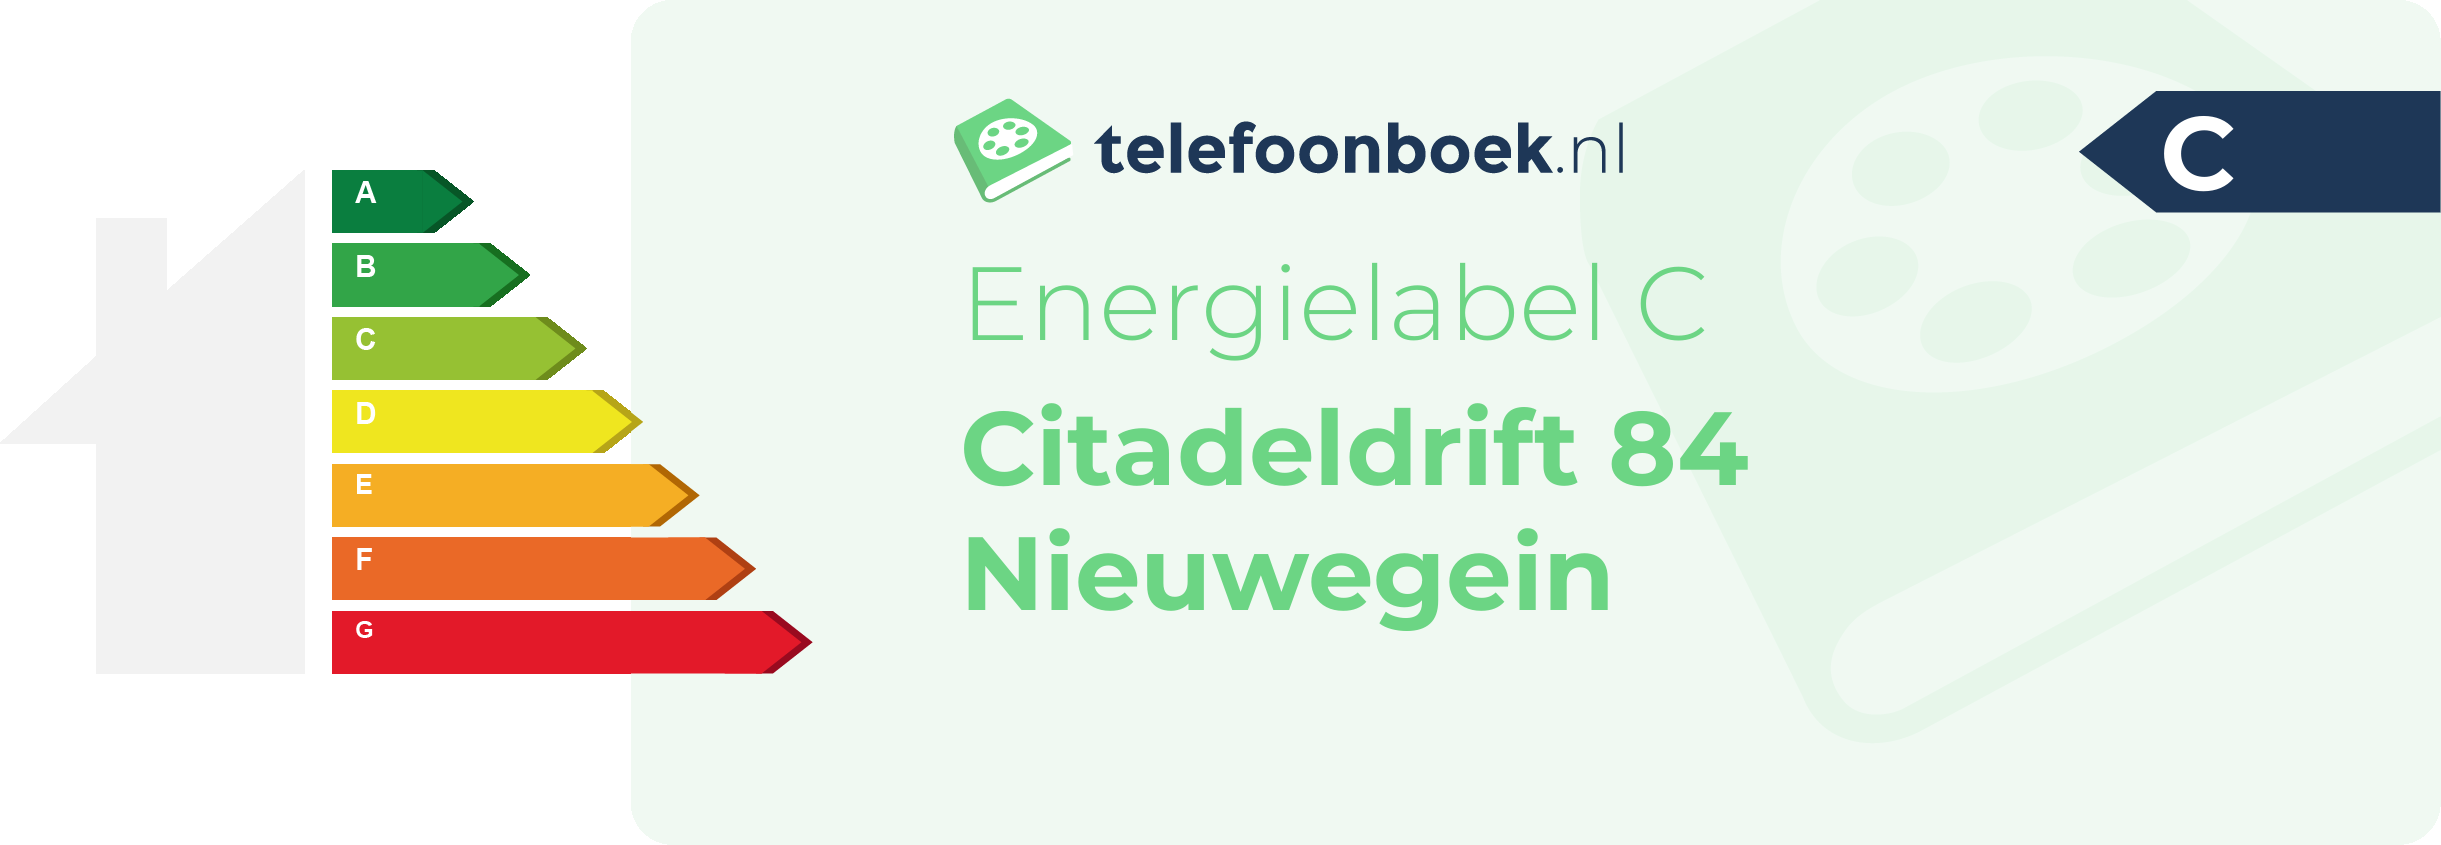 Energielabel Citadeldrift 84 Nieuwegein